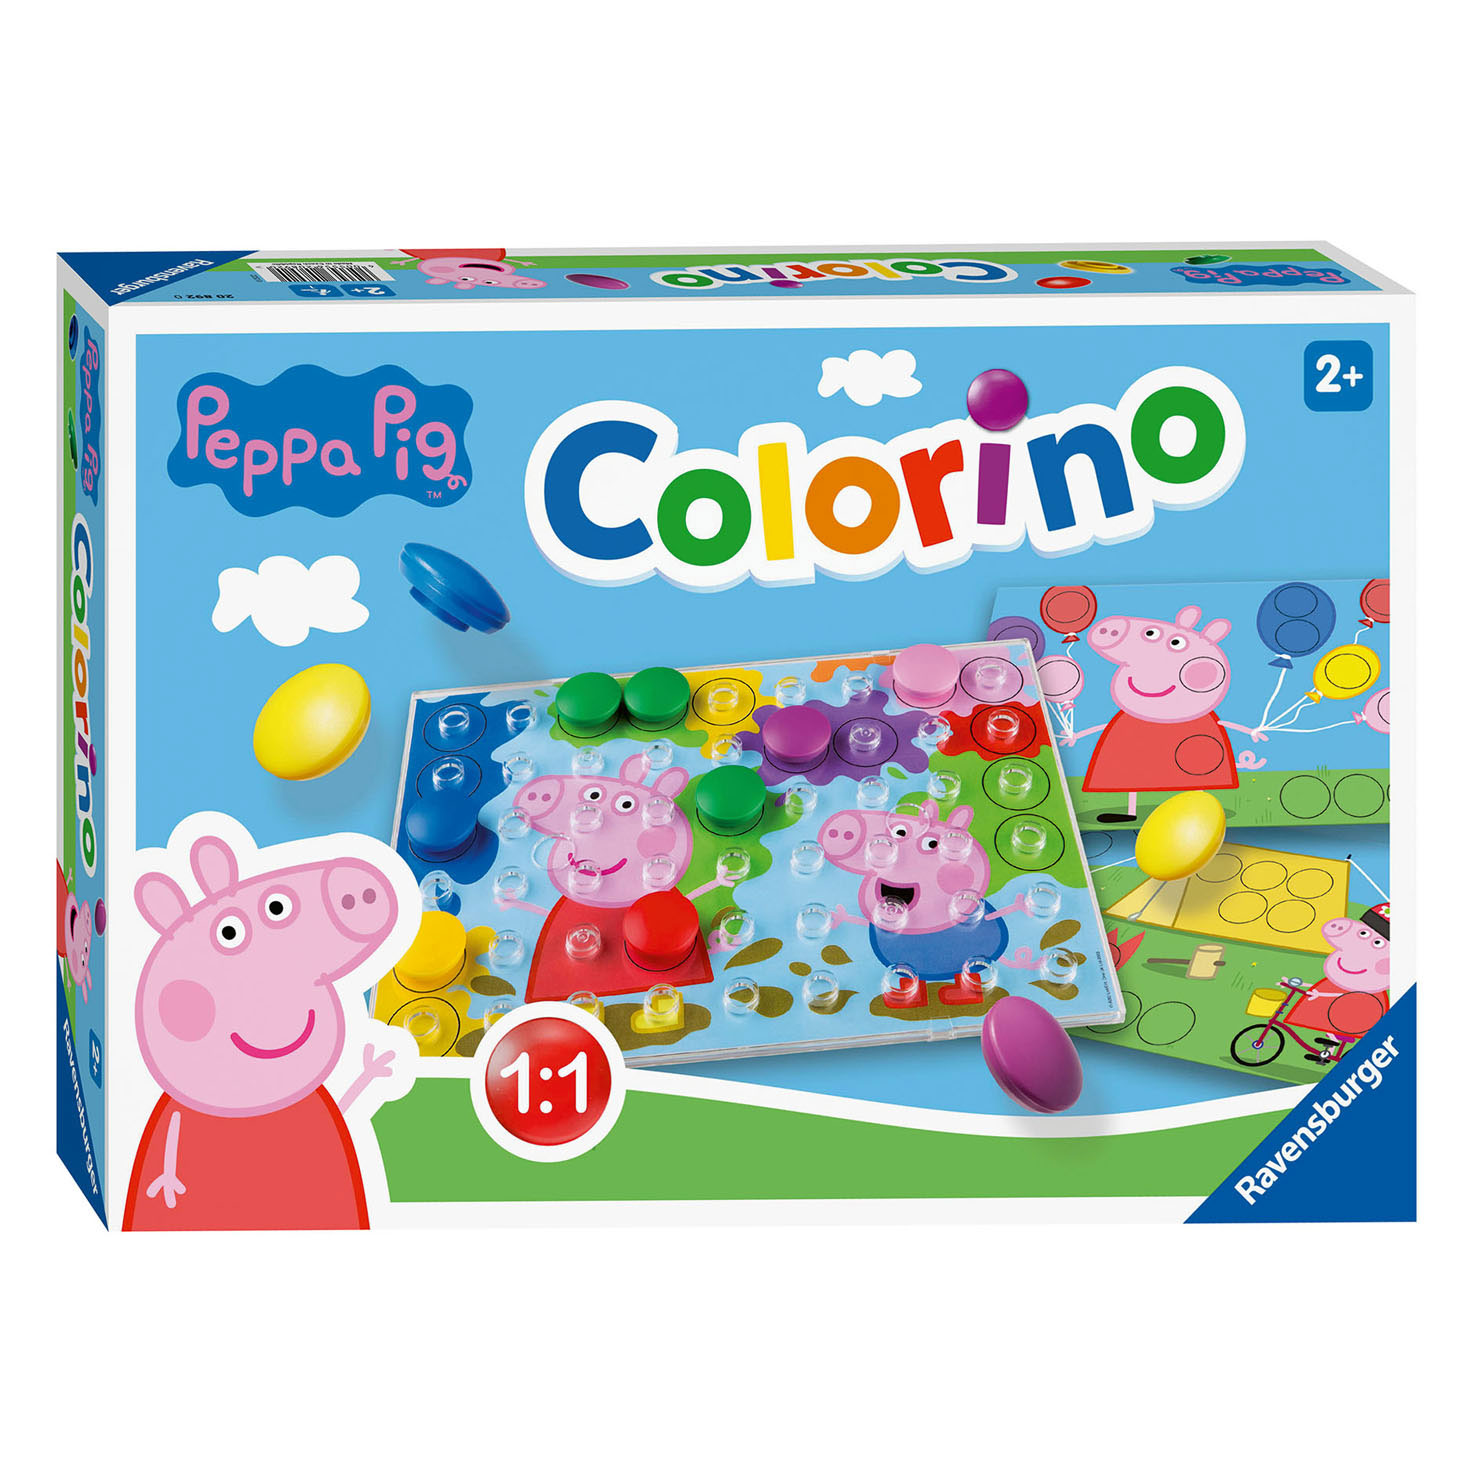 Peppa Pig Colorino Kinderspel